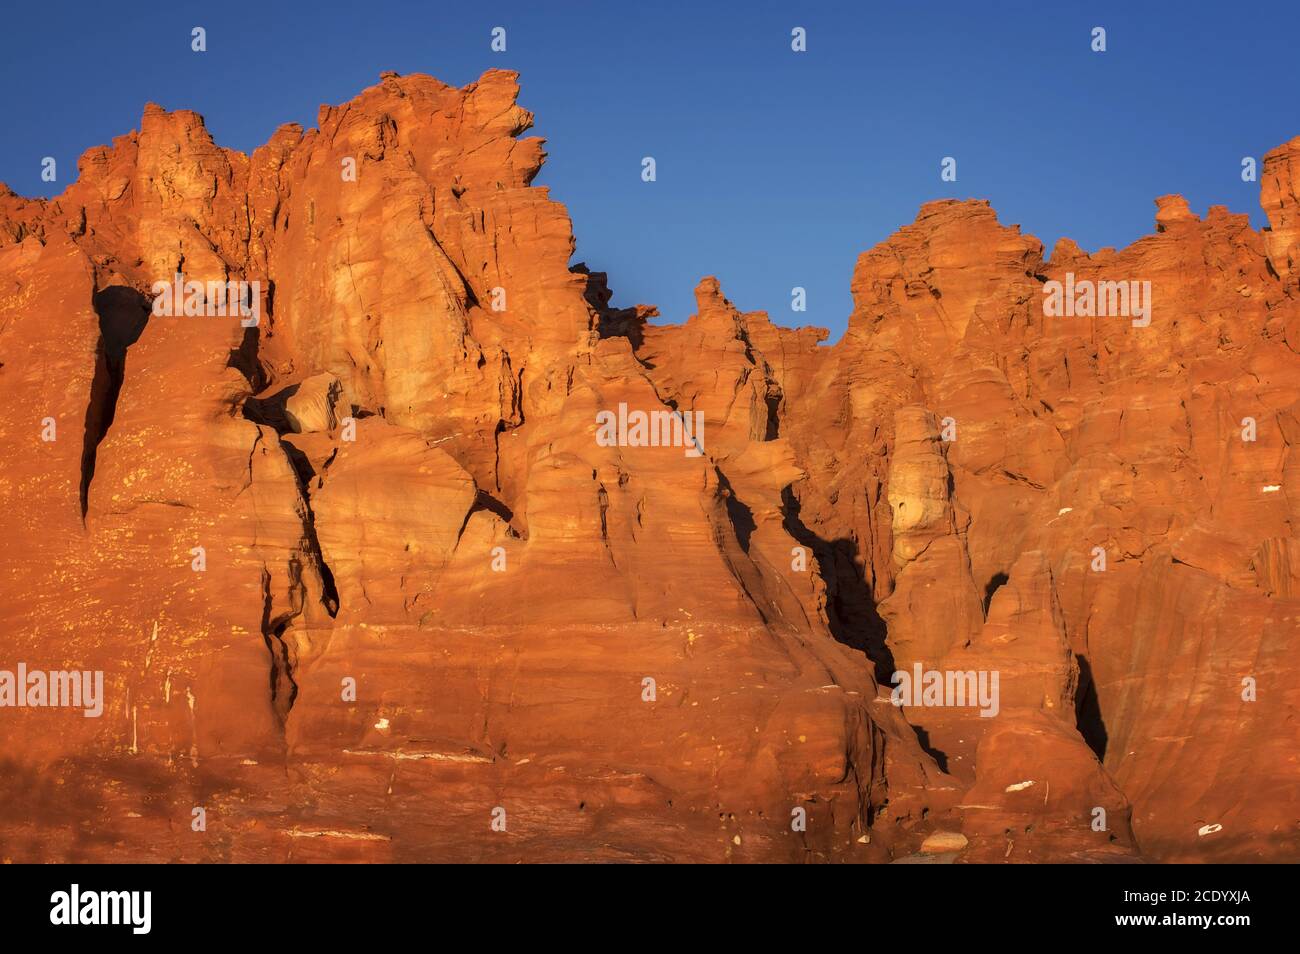 Australie occidentale – côte rocheuse avec des rochers de couleur orange à Péninsule de Dampier Banque D'Images